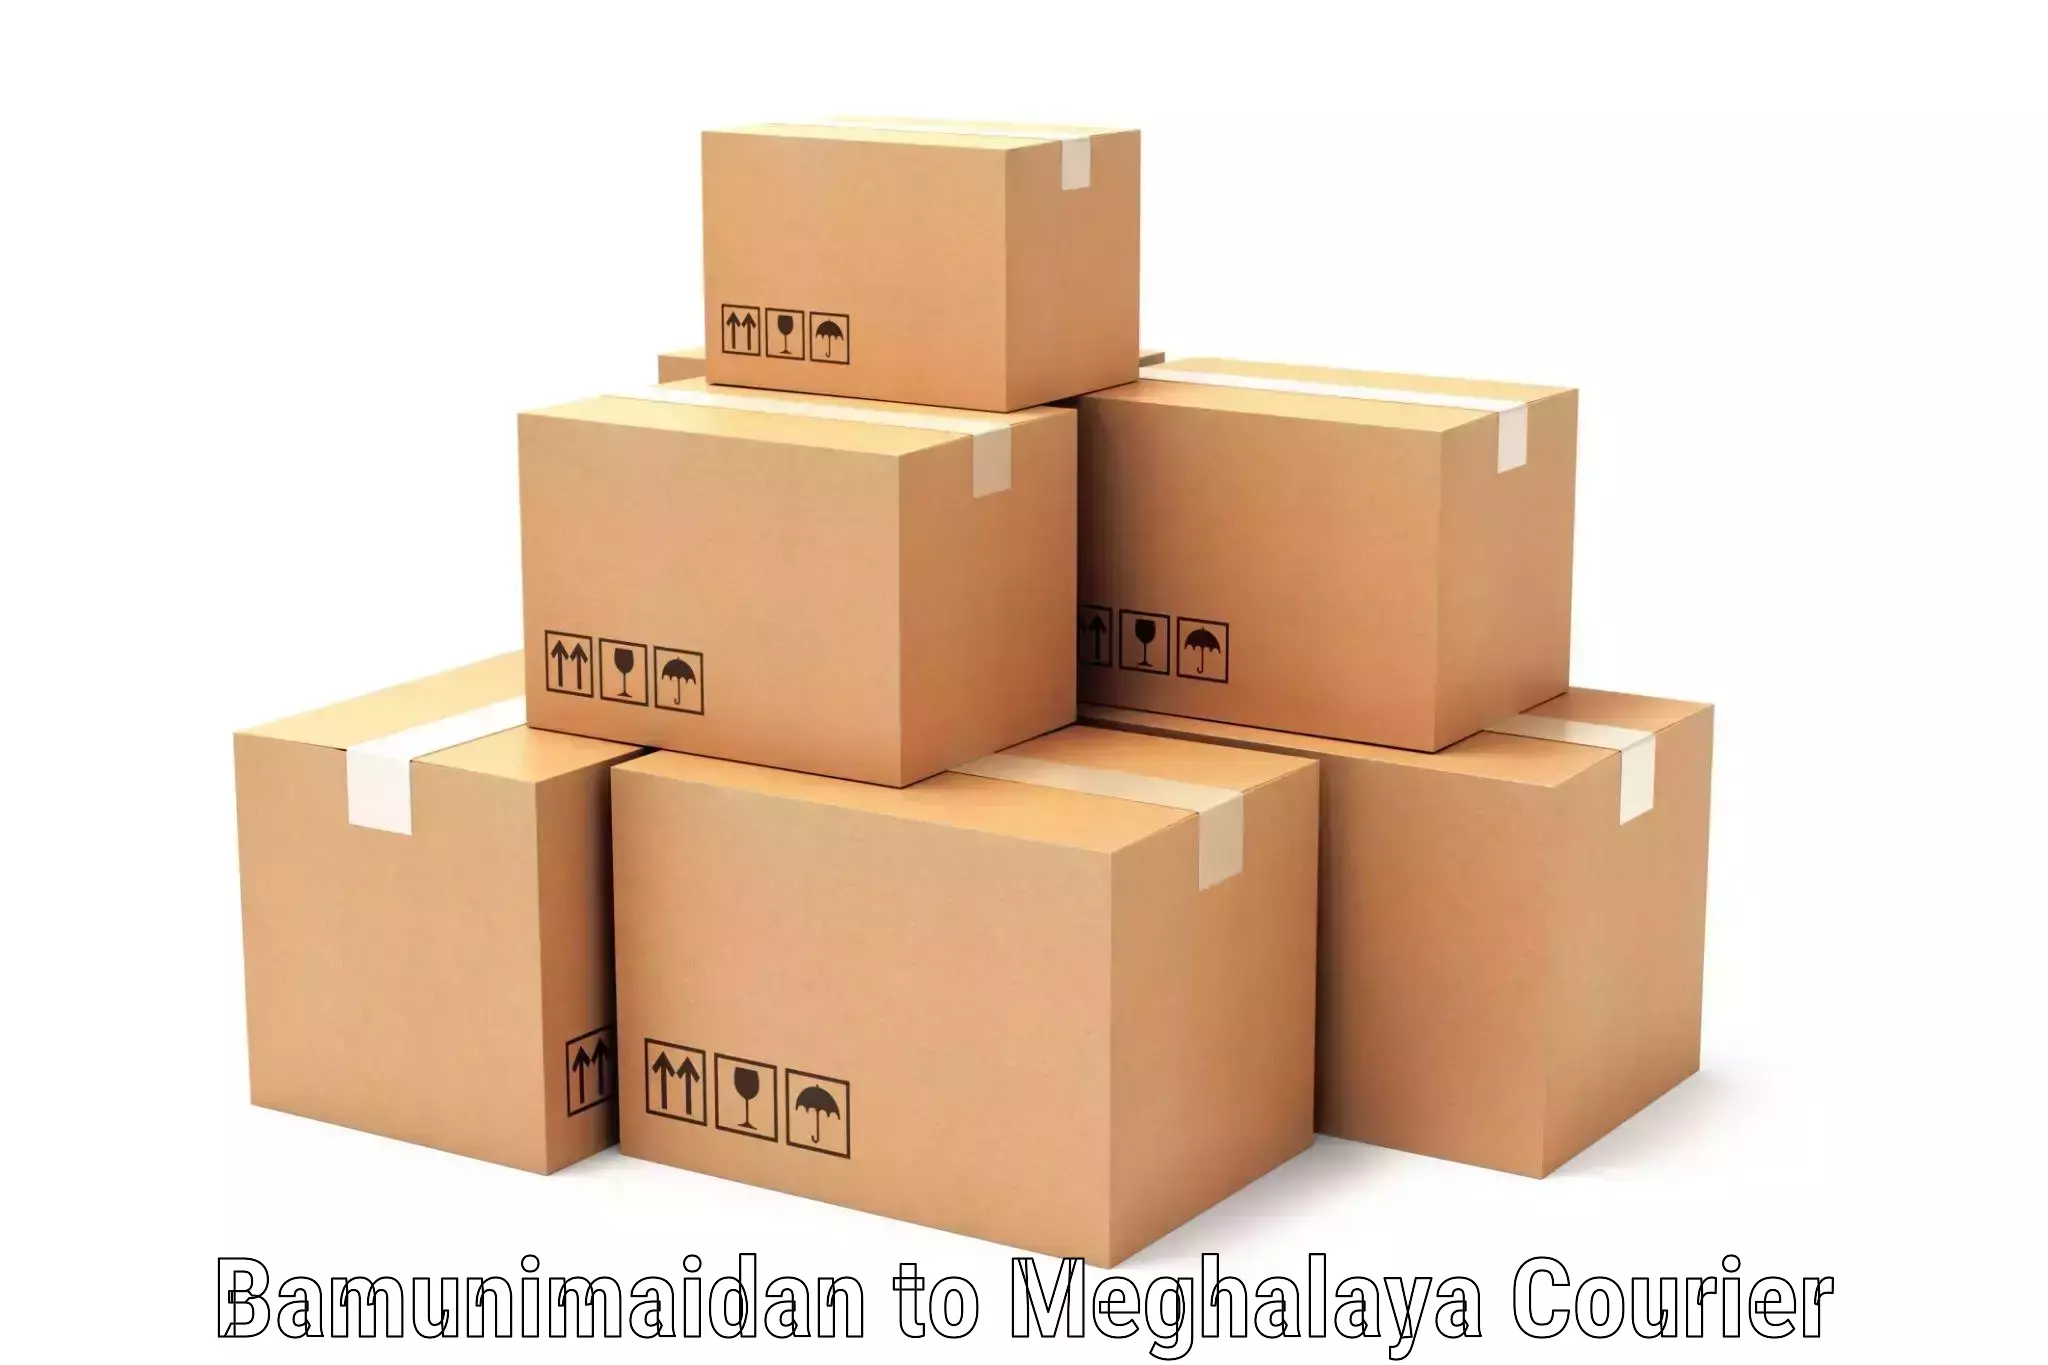 High-capacity parcel service Bamunimaidan to Marshillong